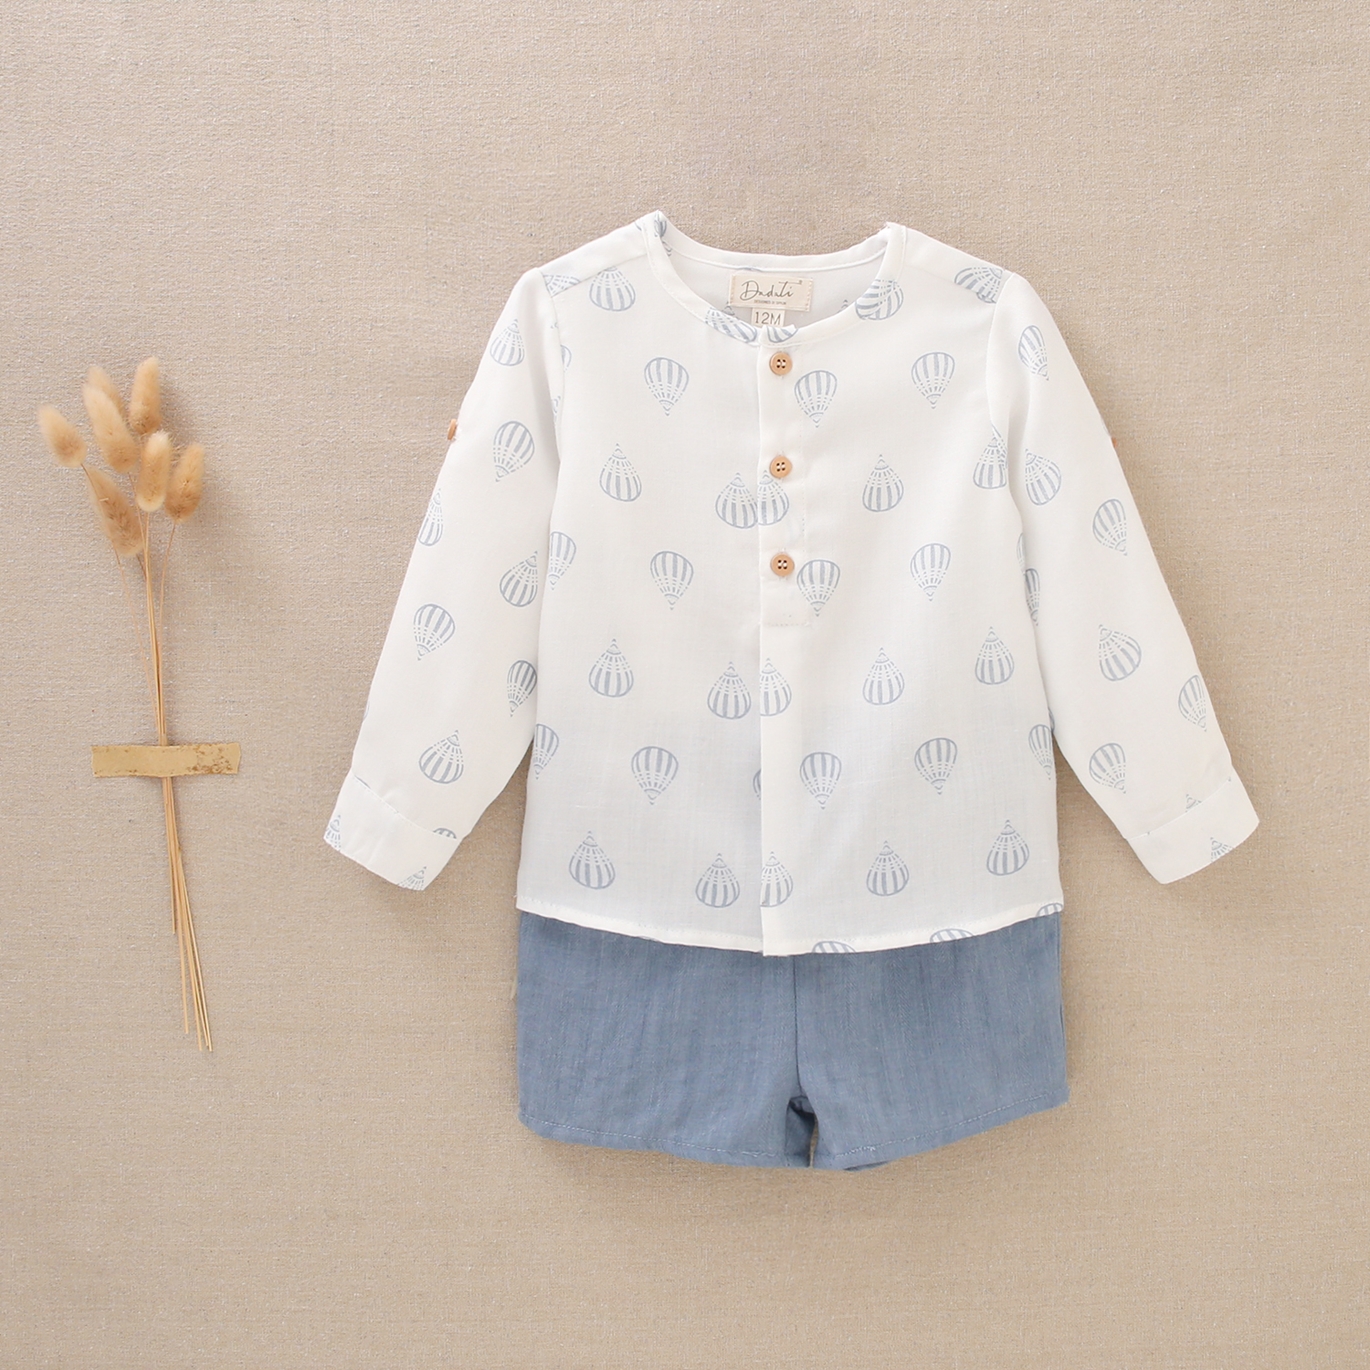 Imagen de Conjunto para bebé niño, camisa estampada blanca con globos azules y pantalón corto azul